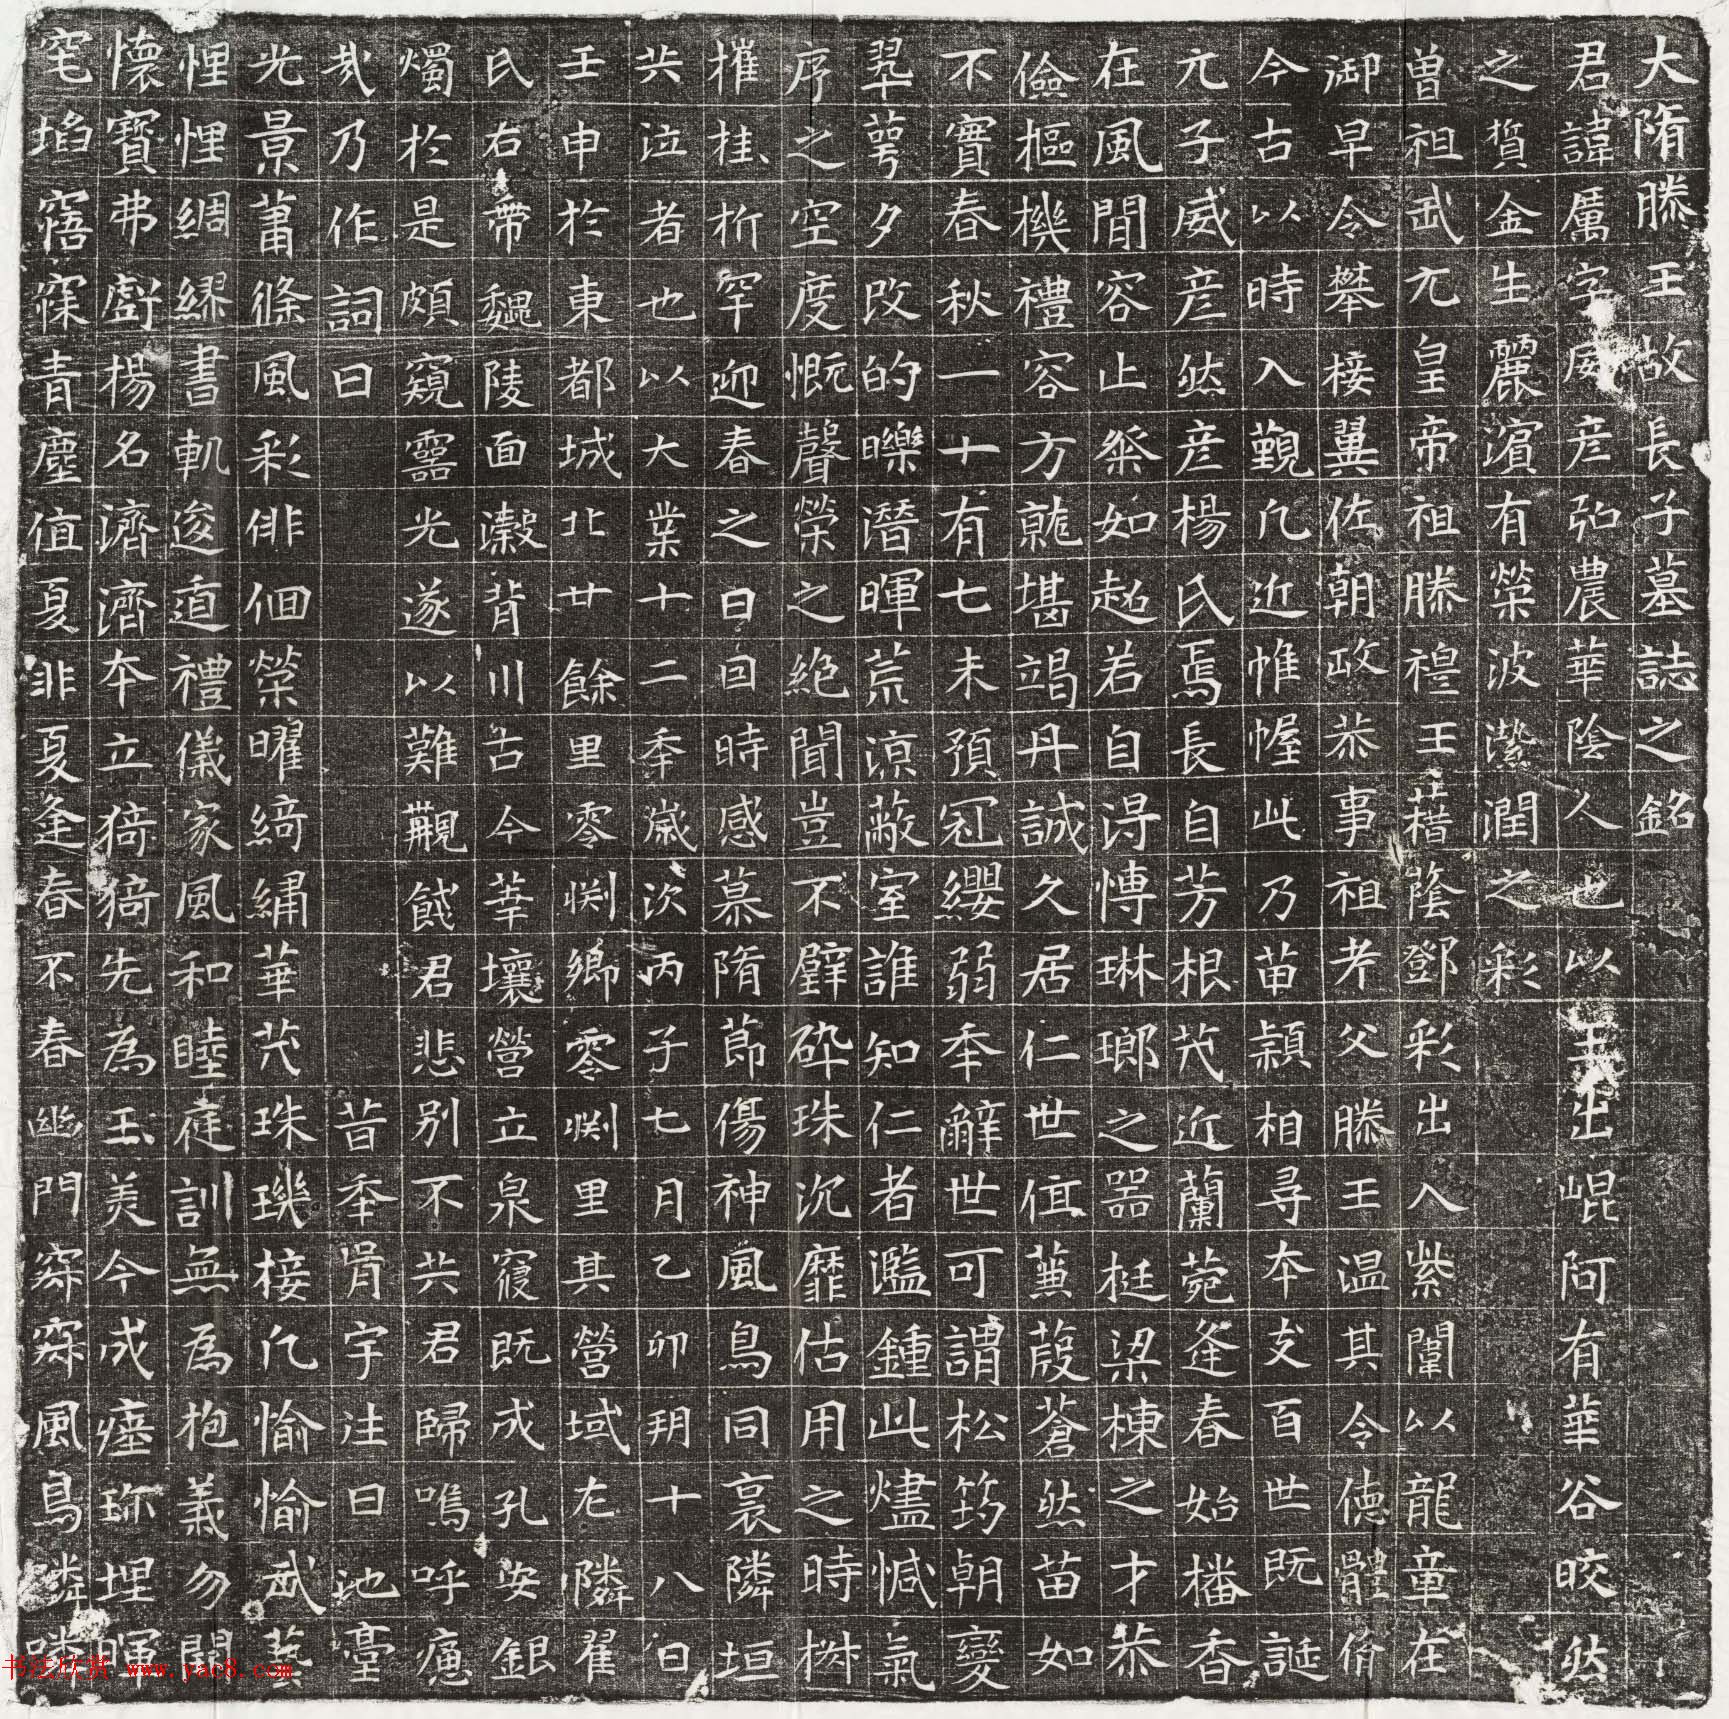 隋代书法石刻欣赏《杨厉墓志》清晰拓片全图